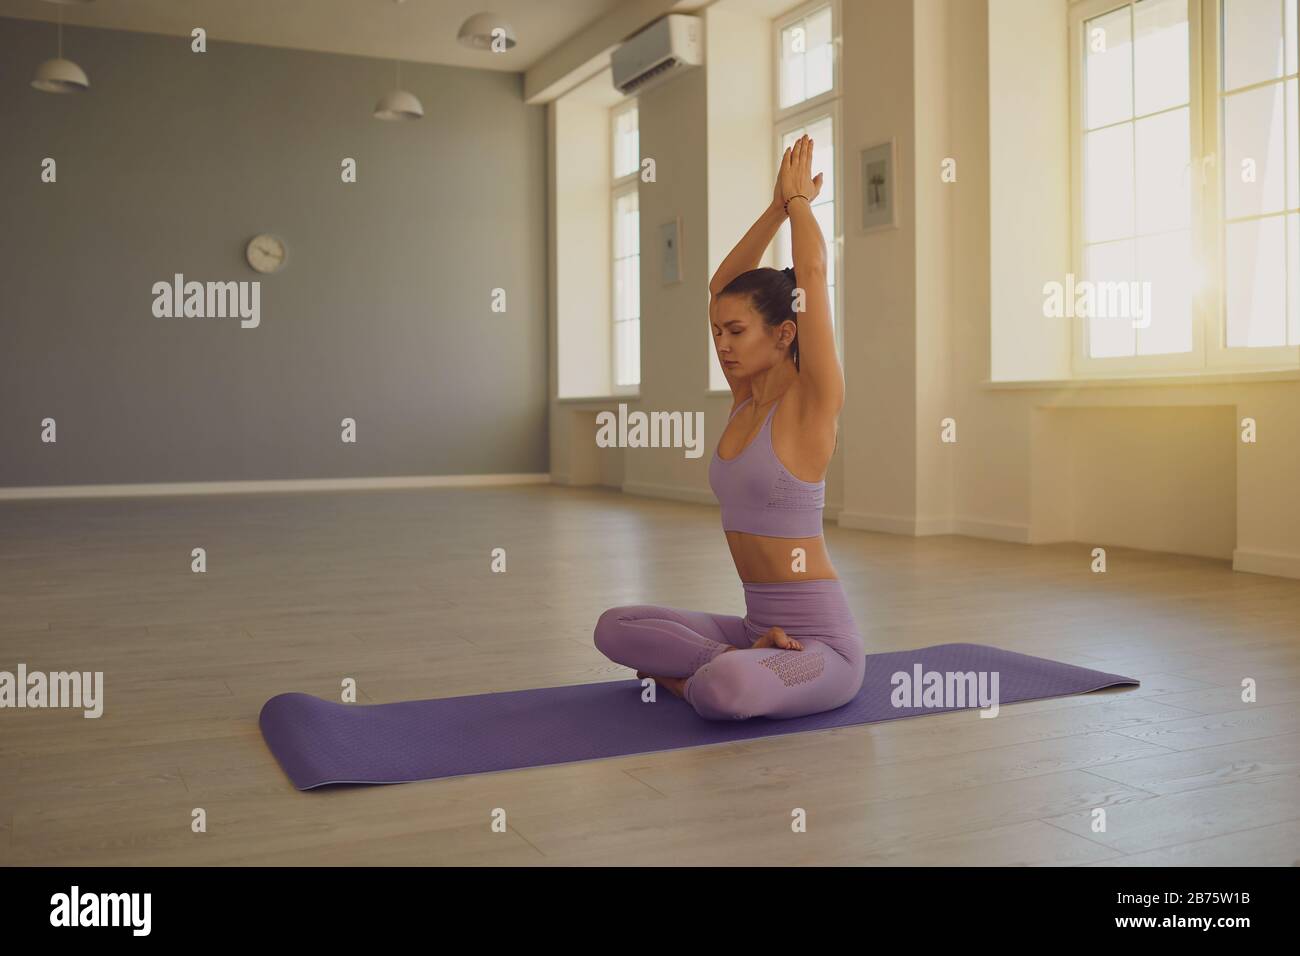 Junge Frau, die Yoga macht. Meditierende athletische Frau, die Yoga macht, entspannen konzentrierte Balance im Raum. Stockfoto